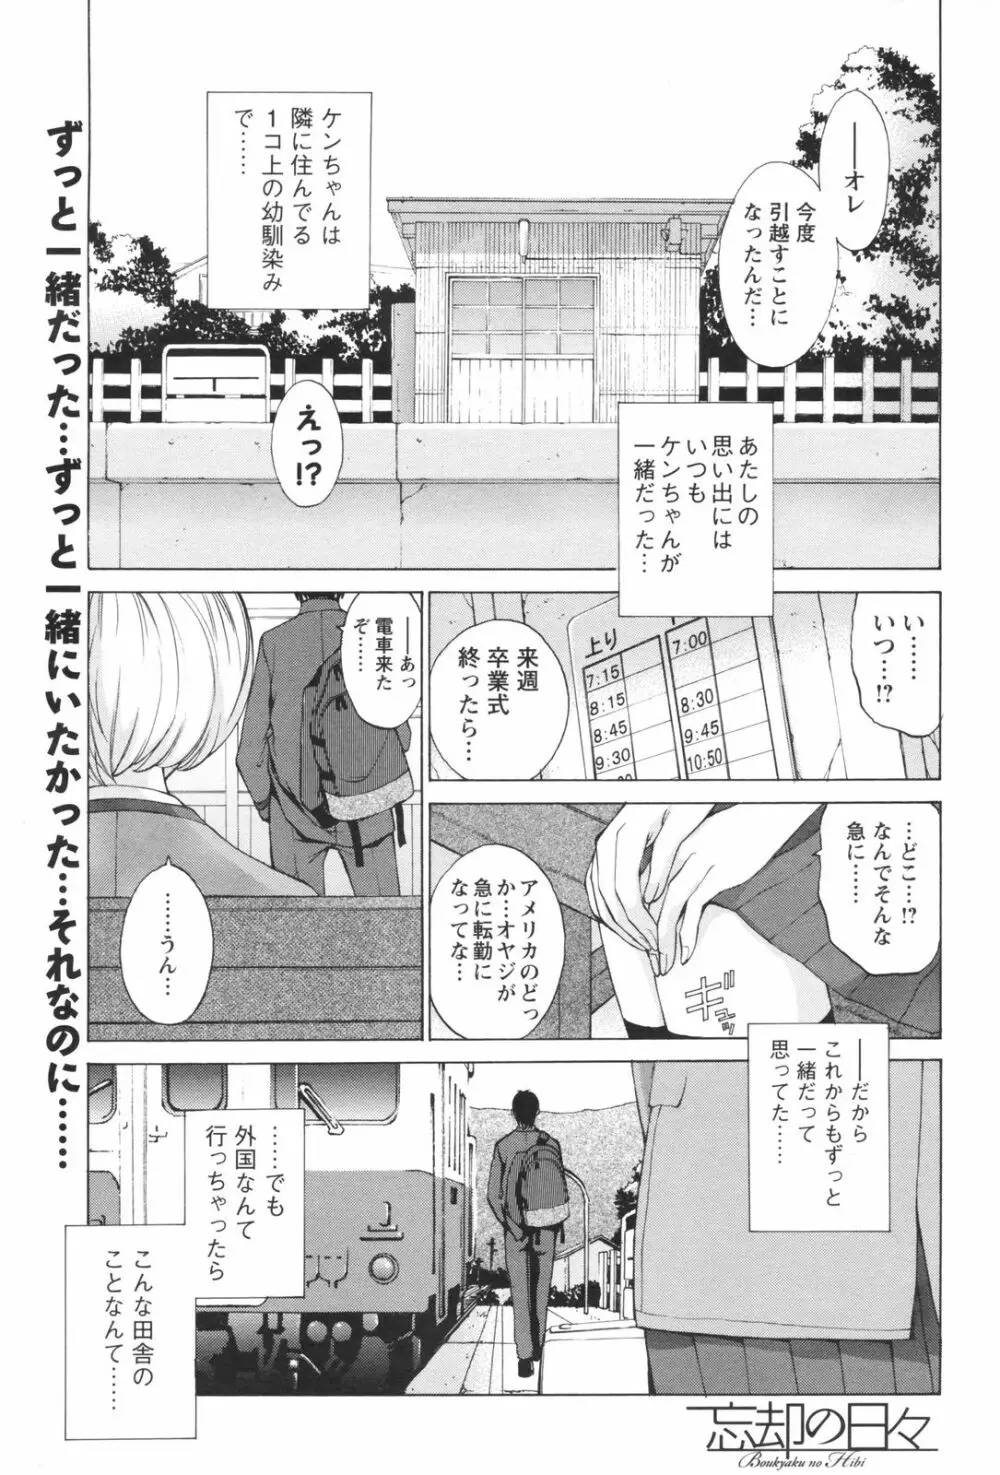 メンズヤングスペシャルIKAZUCHI雷 Vol.5 2008年3月号増刊 53ページ